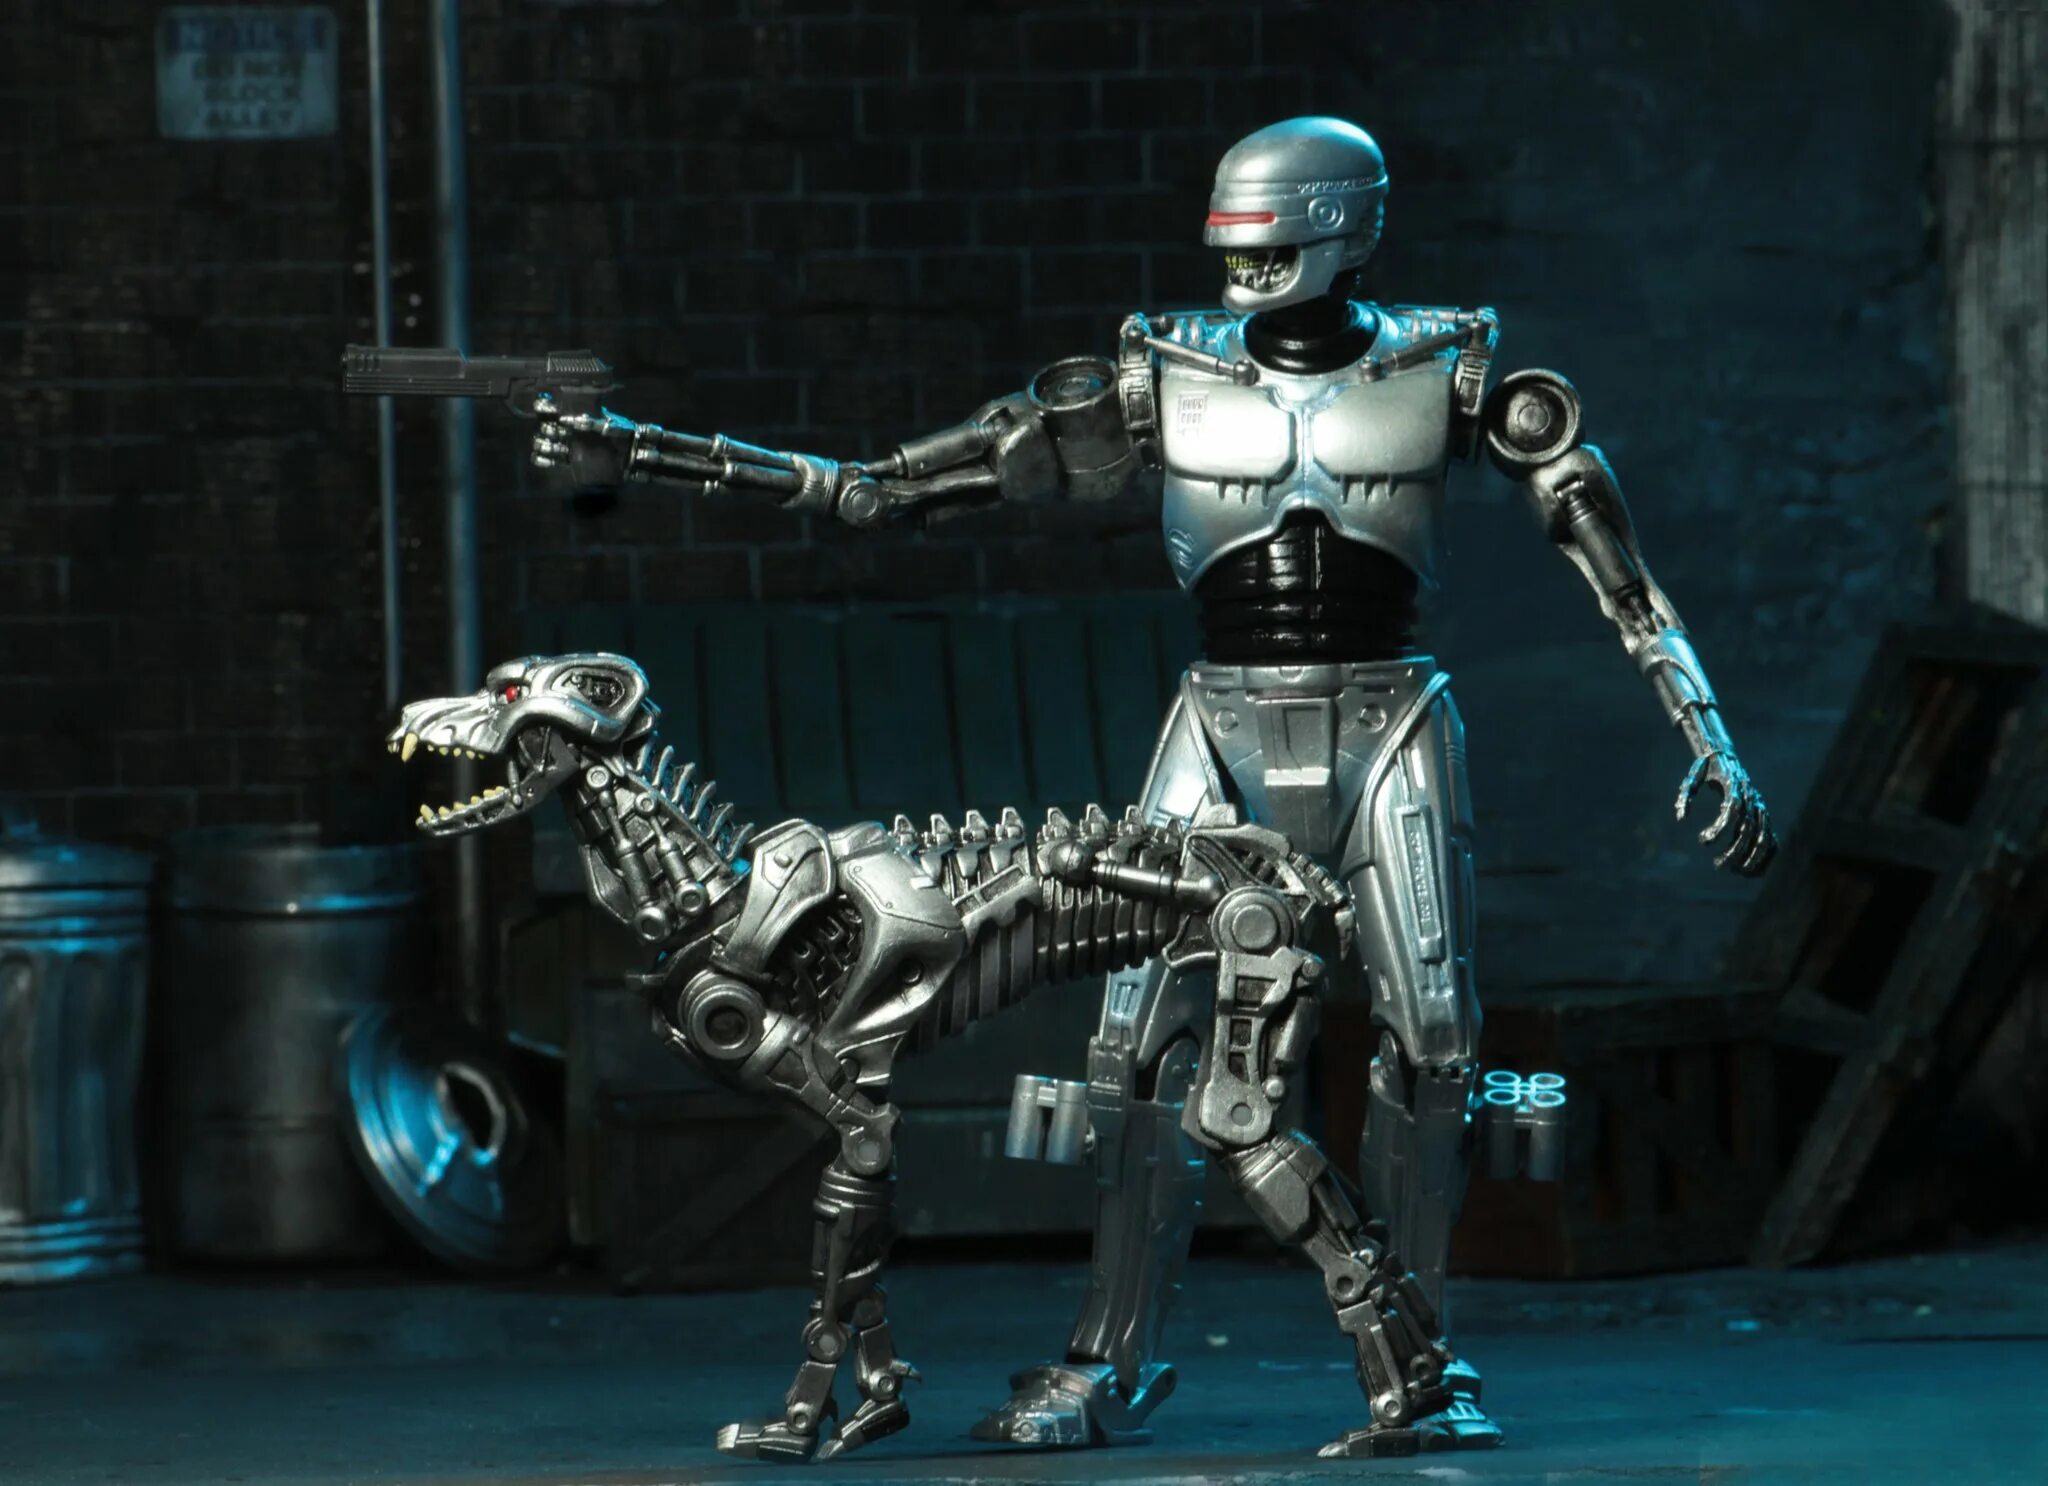 Robocop vs terminator. Terminator ENDOCOP vs Robocop. Фигурки NECA Robocop vs Terminator 51906. NECA Robocop vs Terminator.